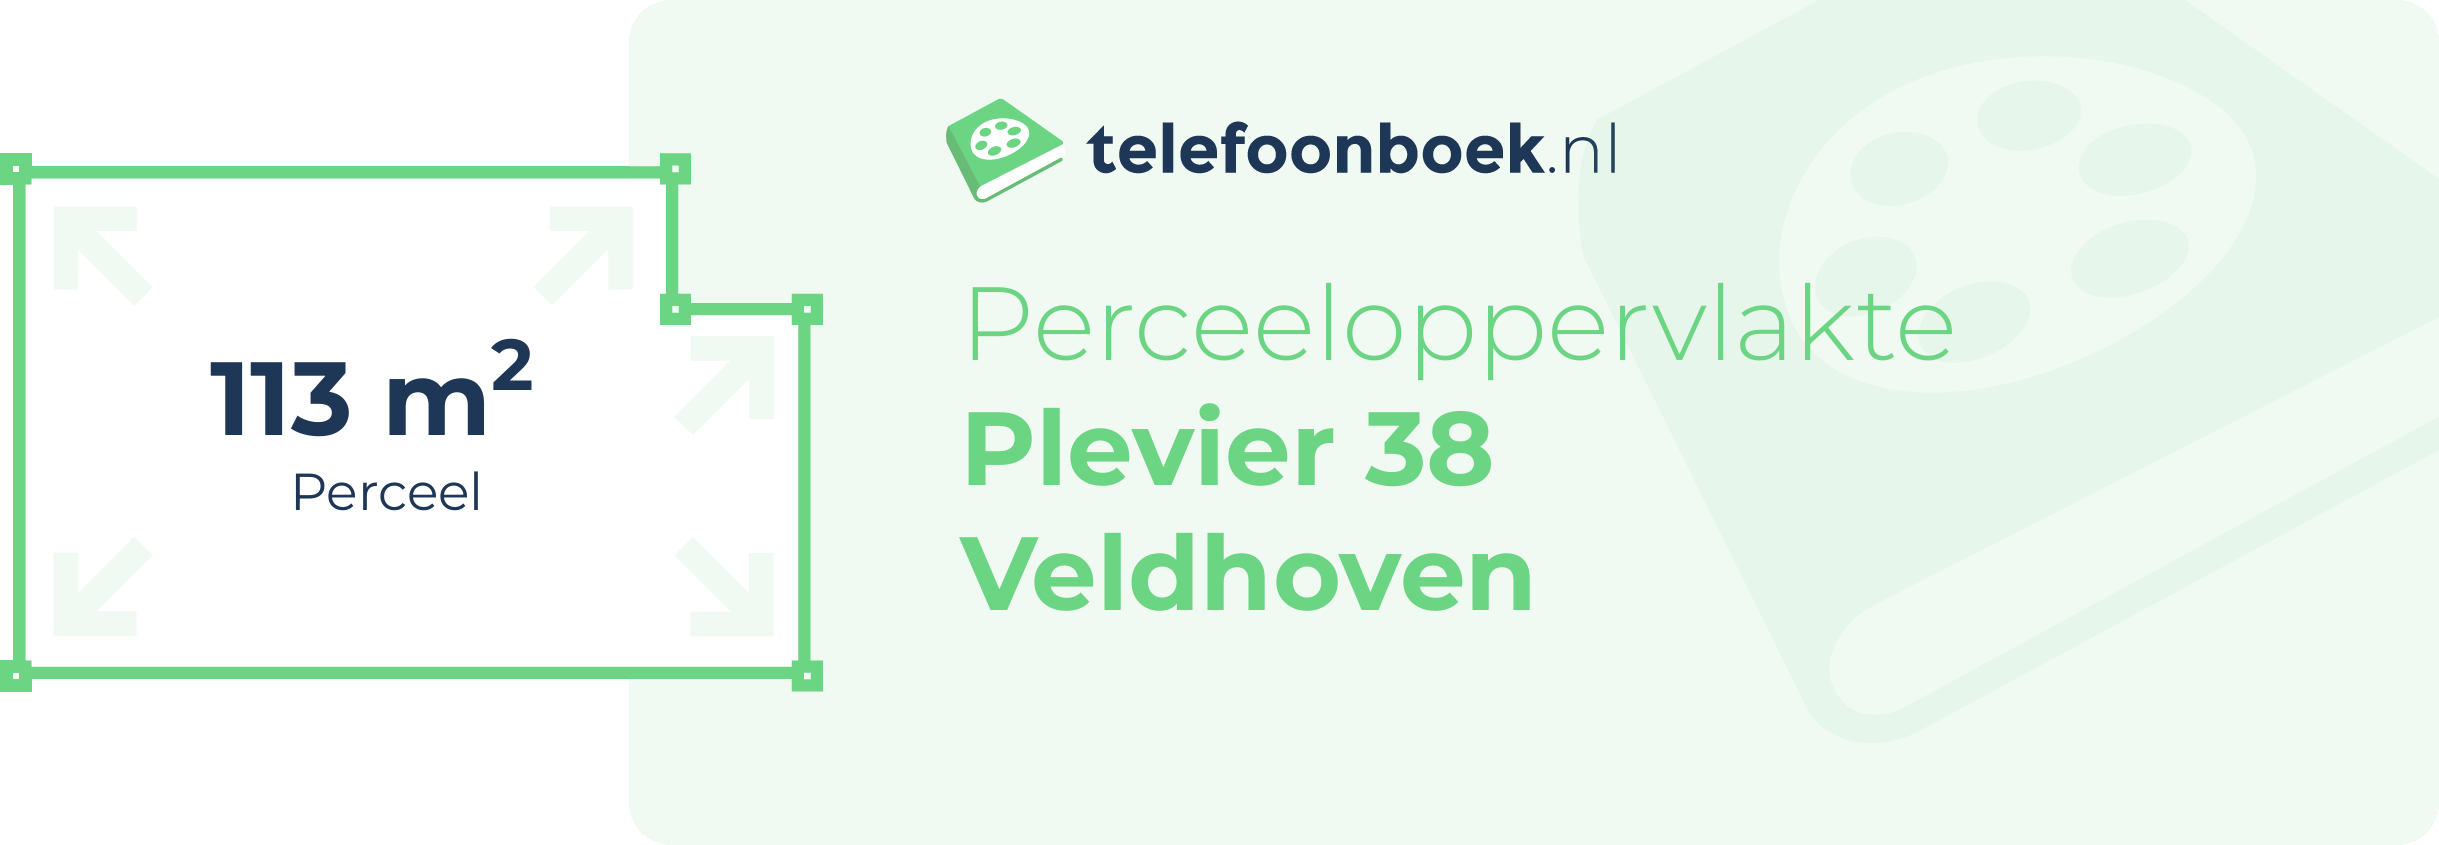 Perceeloppervlakte Plevier 38 Veldhoven